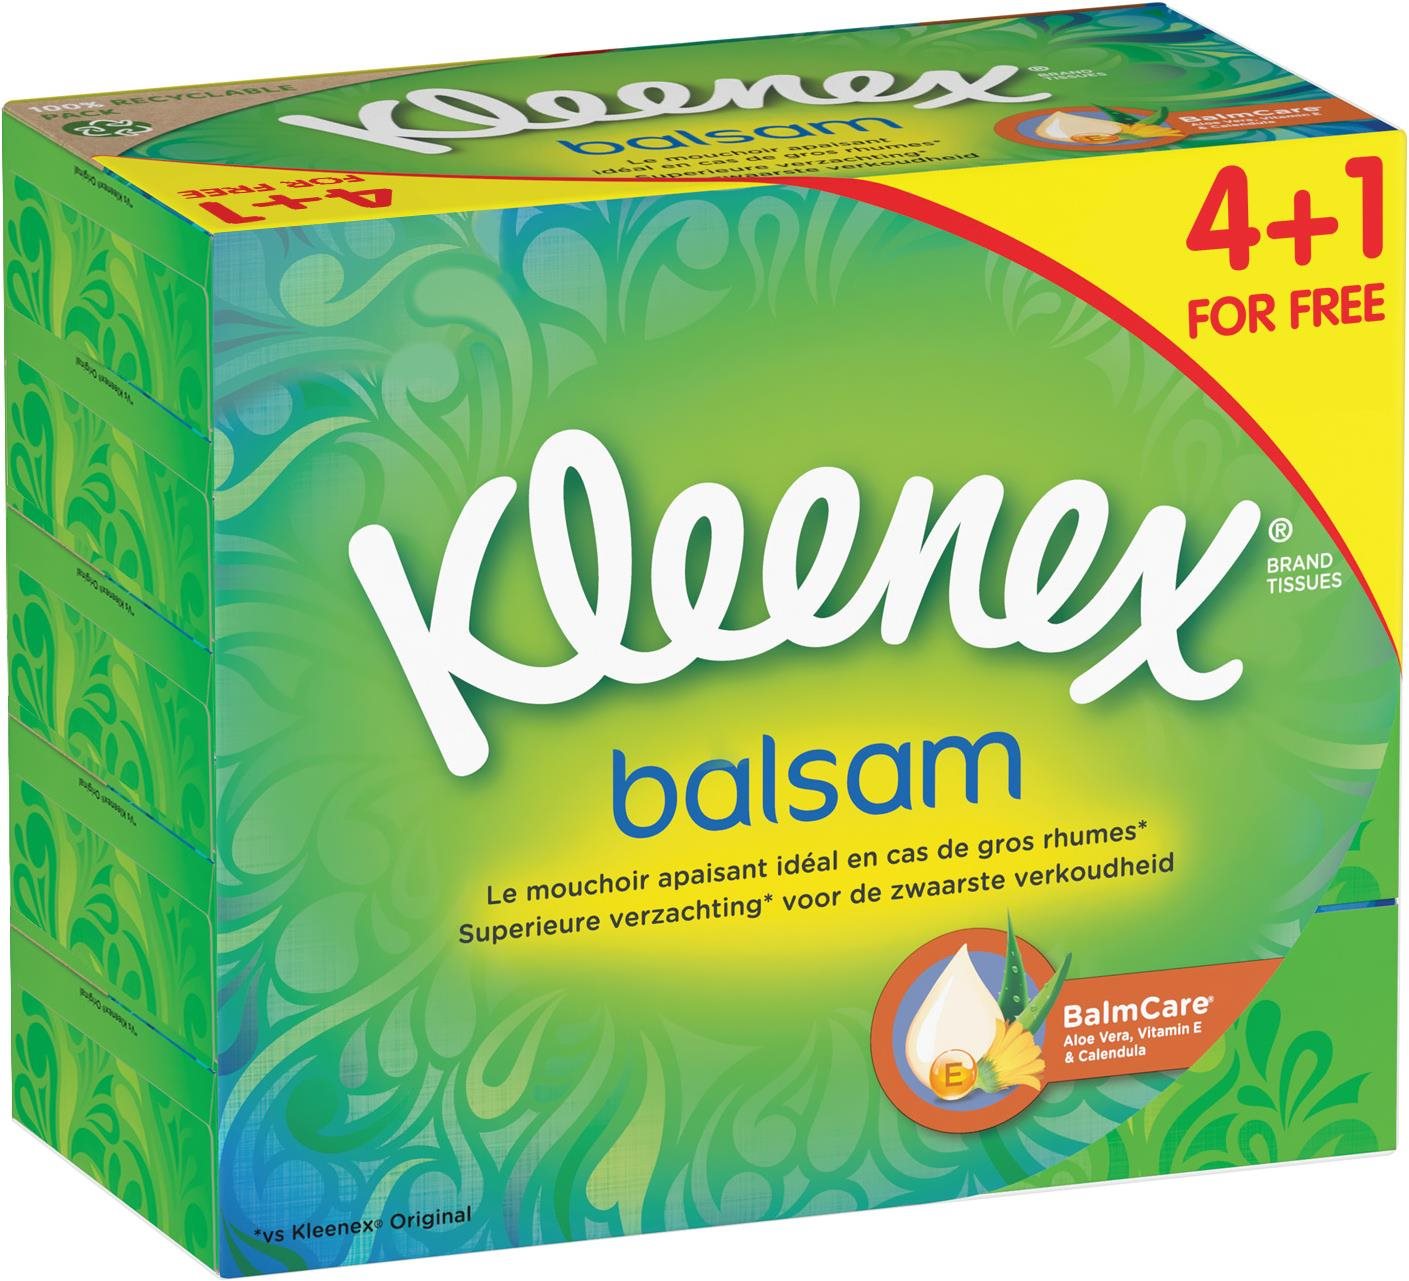 Papírzsebkendő KLEENEX Balsam Box 5× 64 db (320 db)